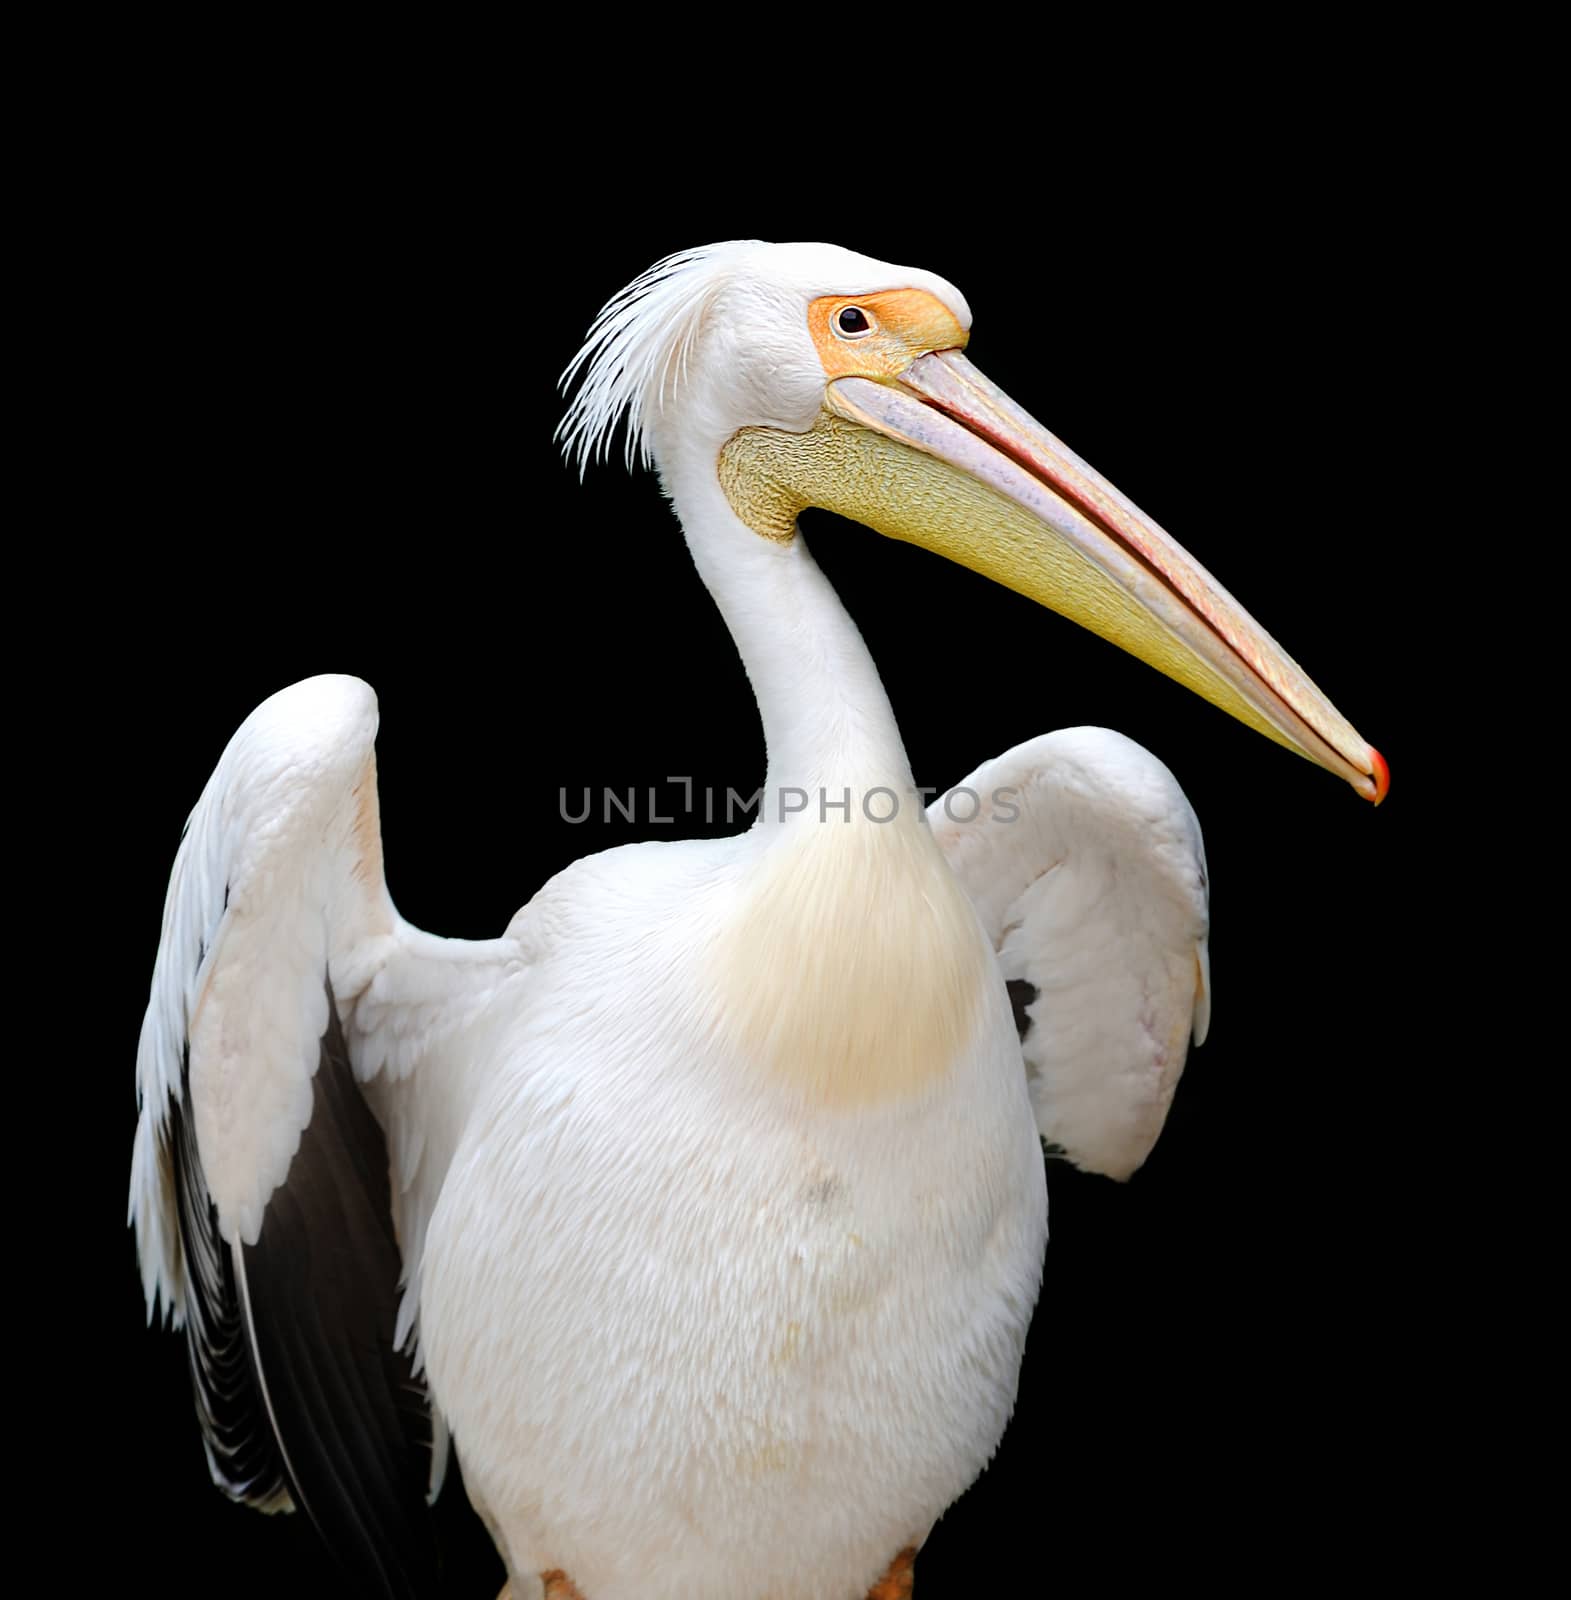 Portrait of a European white pelican on dark background